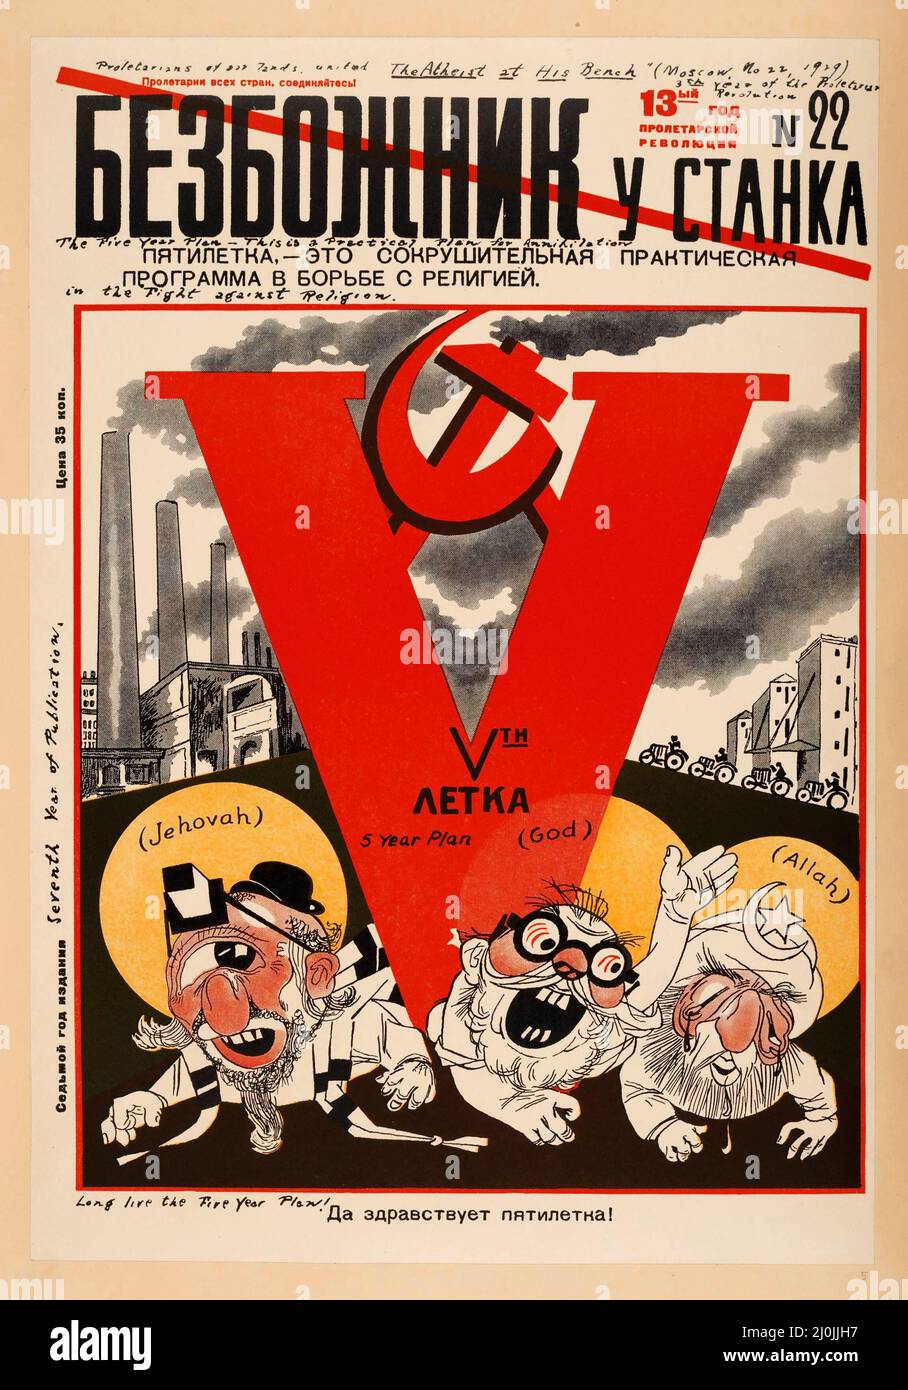 Bezbozhnik, eine sowjetische Zeitschrift aus den 1920er Jahren, die Götter der abrahamischen Religionen zeigt, die durch den kommunistischen 5-Jahres-Plan niedergeschlagen wurden. Stockfoto